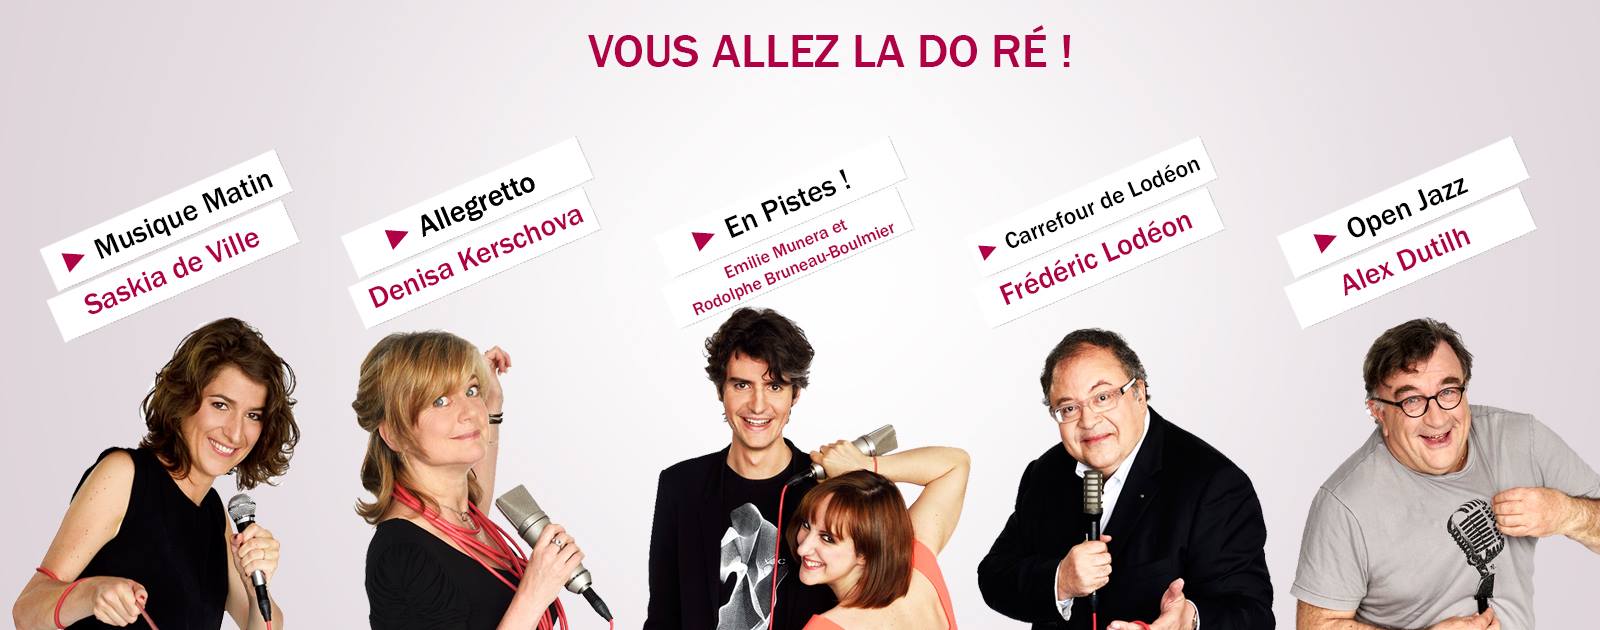 France Musique poursuit son développement numérique